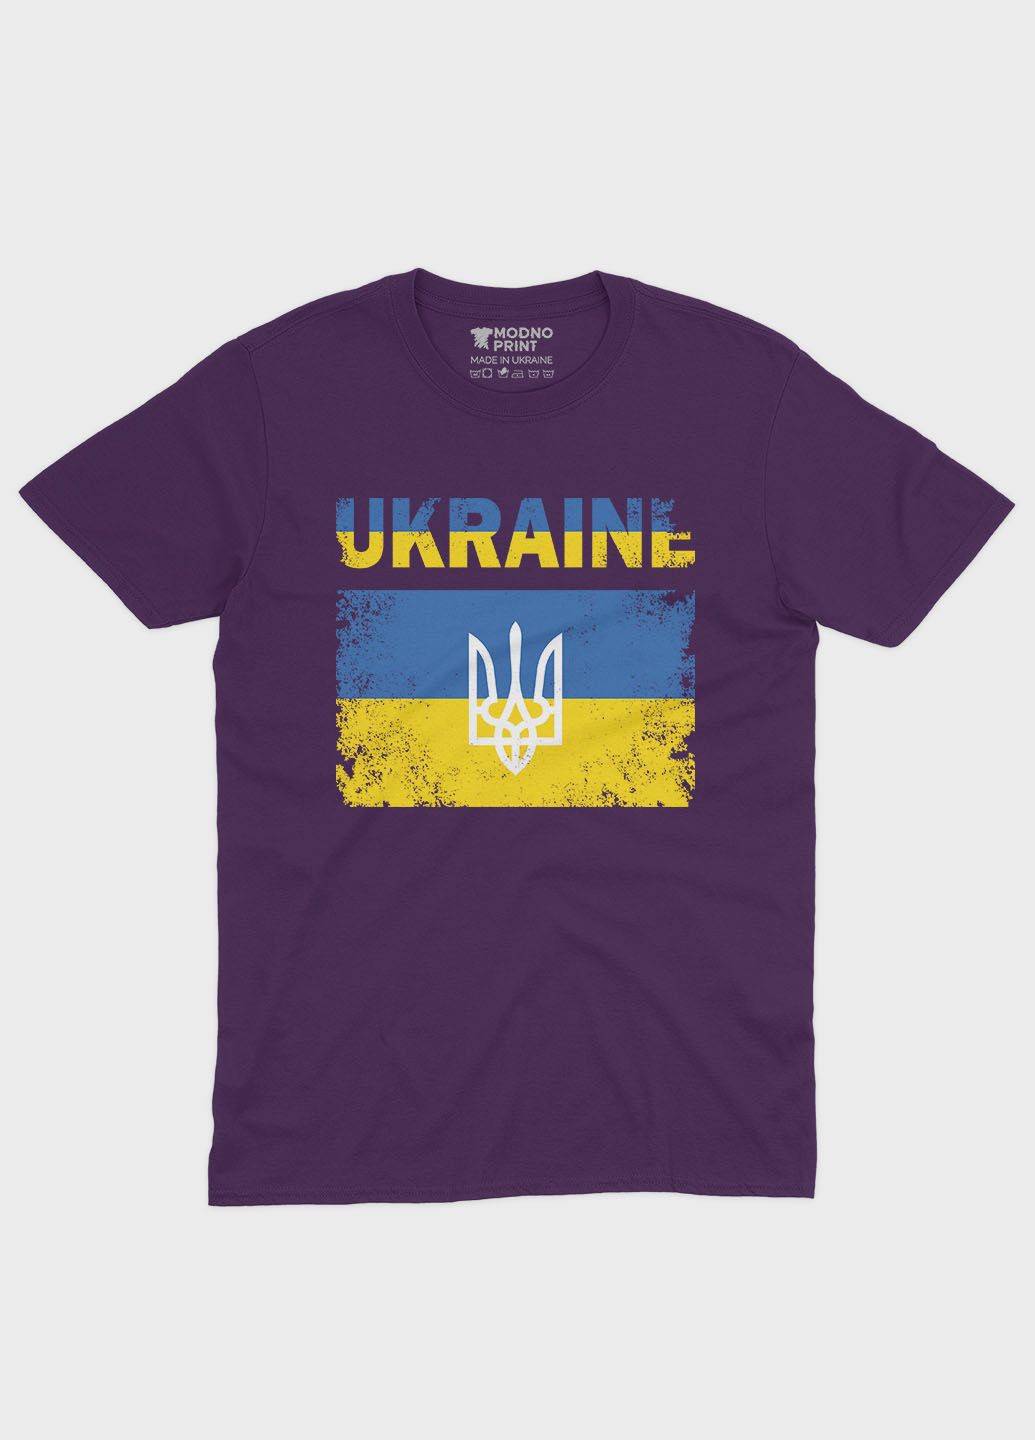 Фиолетовая мужская футболка с патриотическим принтом ukraine (ts001-2-dby-005-1-044) Modno